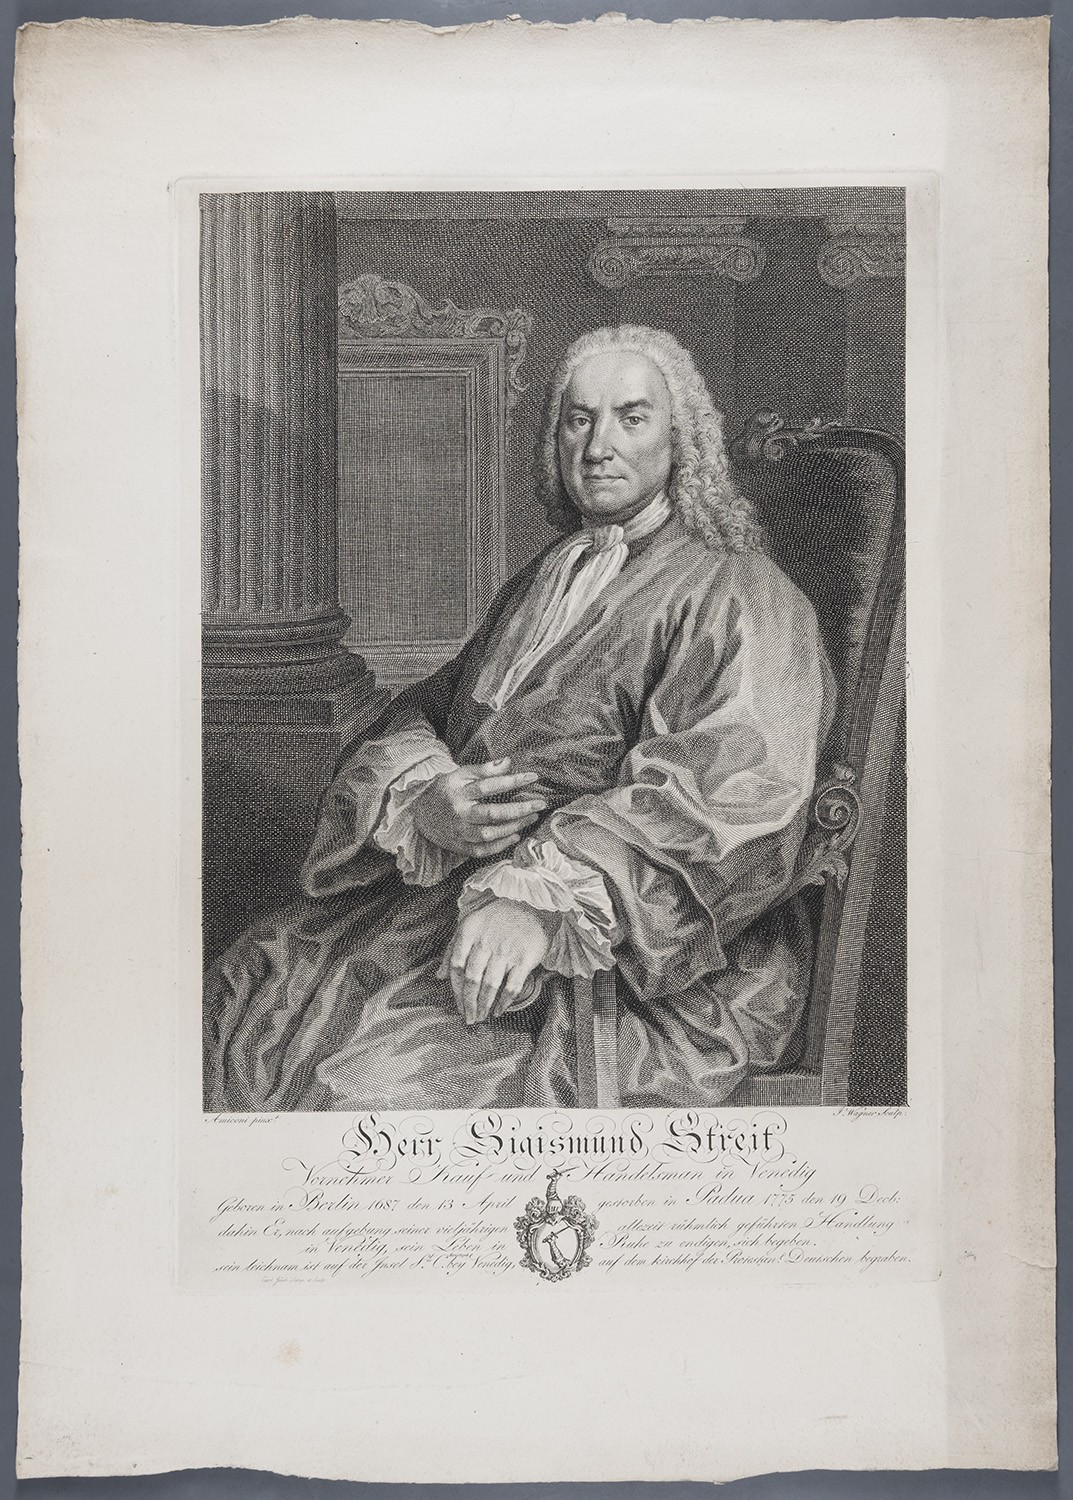 Streit, Sigismund (1687-1775), Kauf- und Handelsmann in Venedig (Landesgeschichtliche Vereinigung für die Mark Brandenburg e.V., Archiv CC BY)